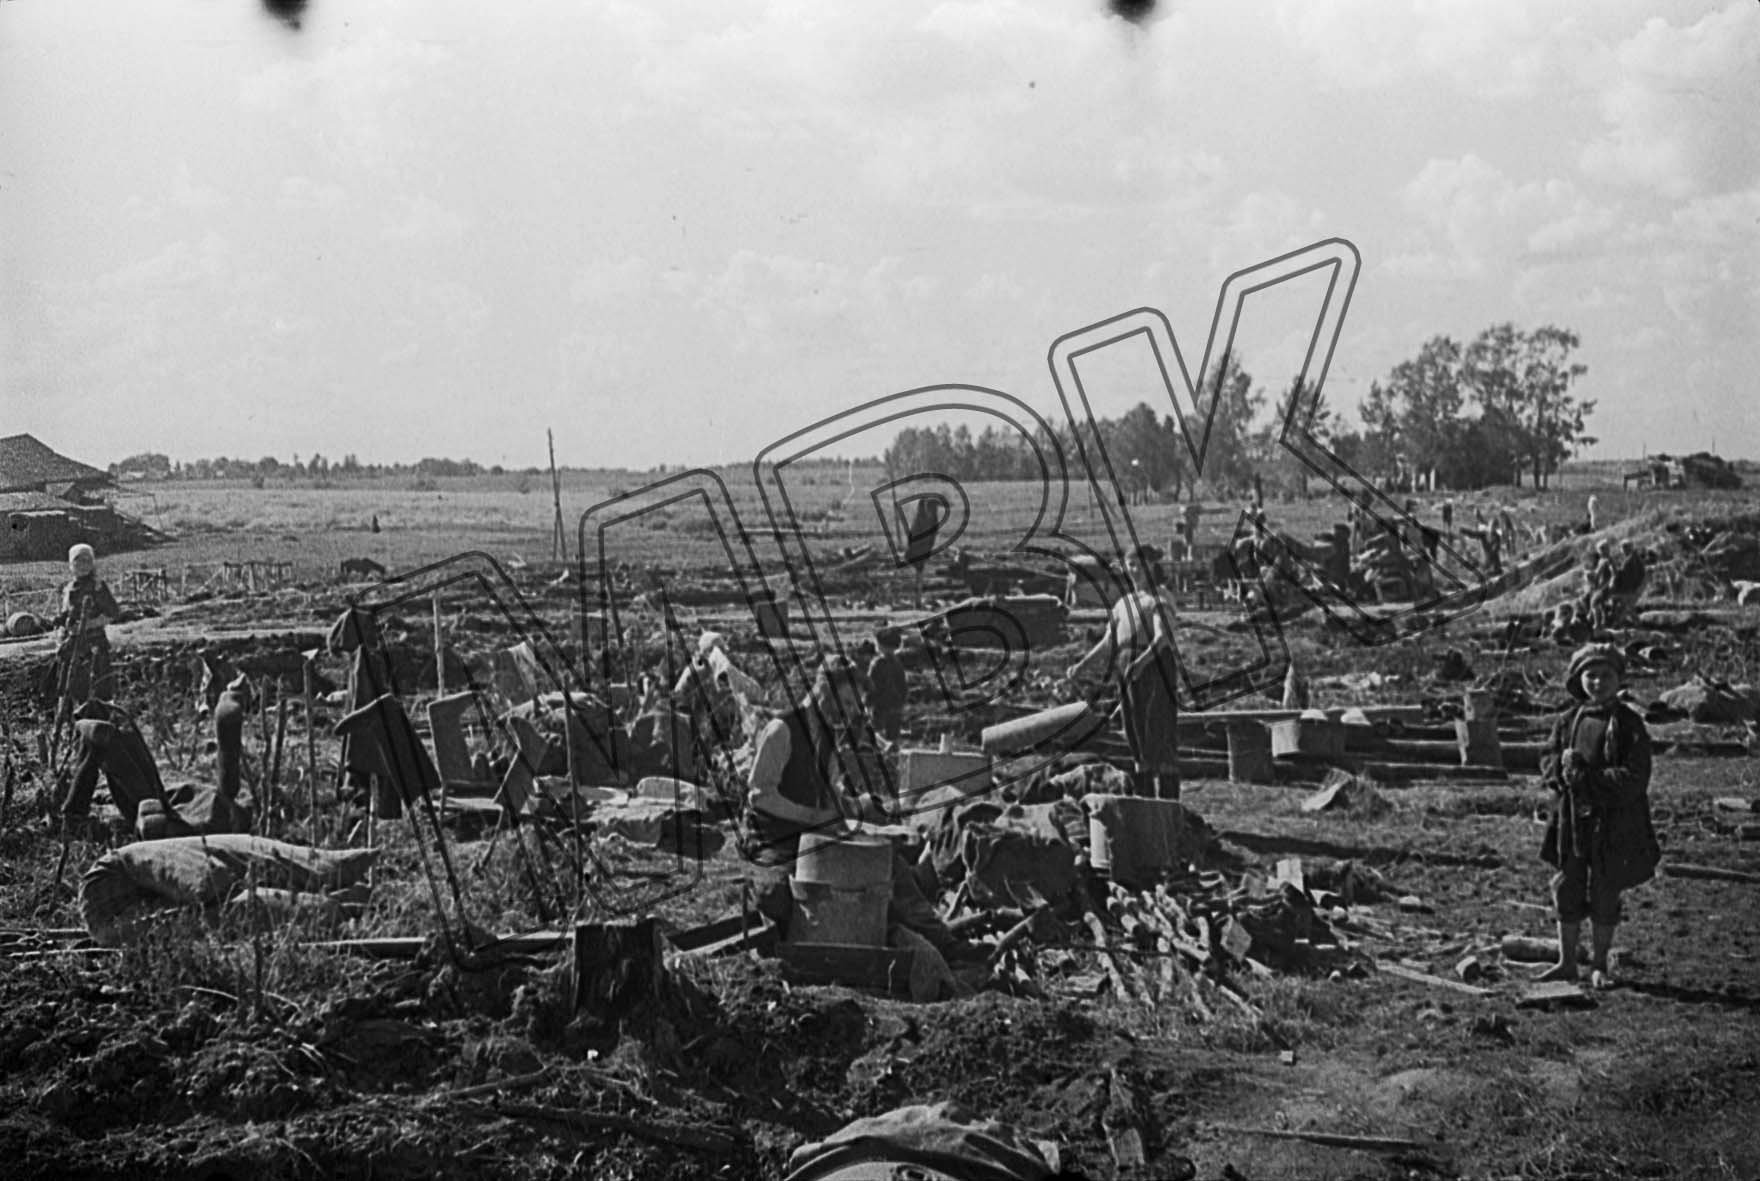 Fotografie: Zivilbevölkerung in den Ruinen ihres Dorfes, Gebiet Kalinin, 11. August 1942 (Museum Berlin-Karlshorst RR-P)